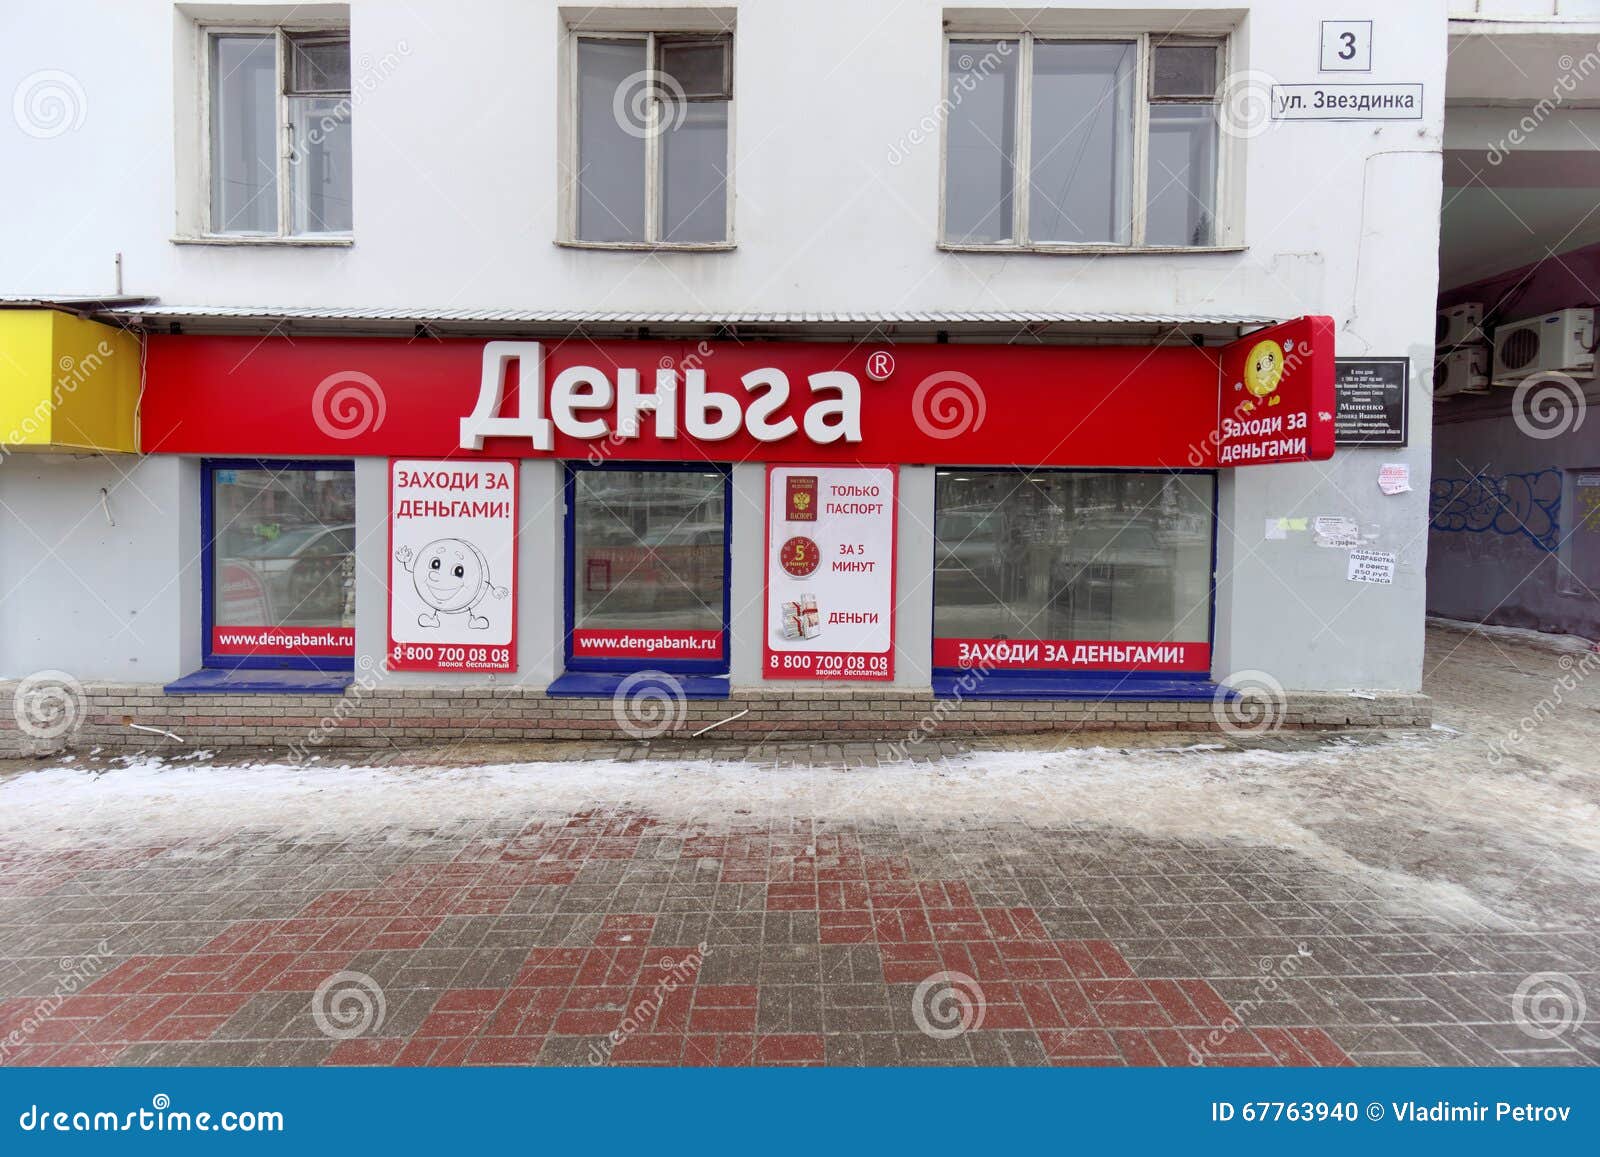 Быстрый микрозайм в Нижнем Новгороде до зарплаты онлайн